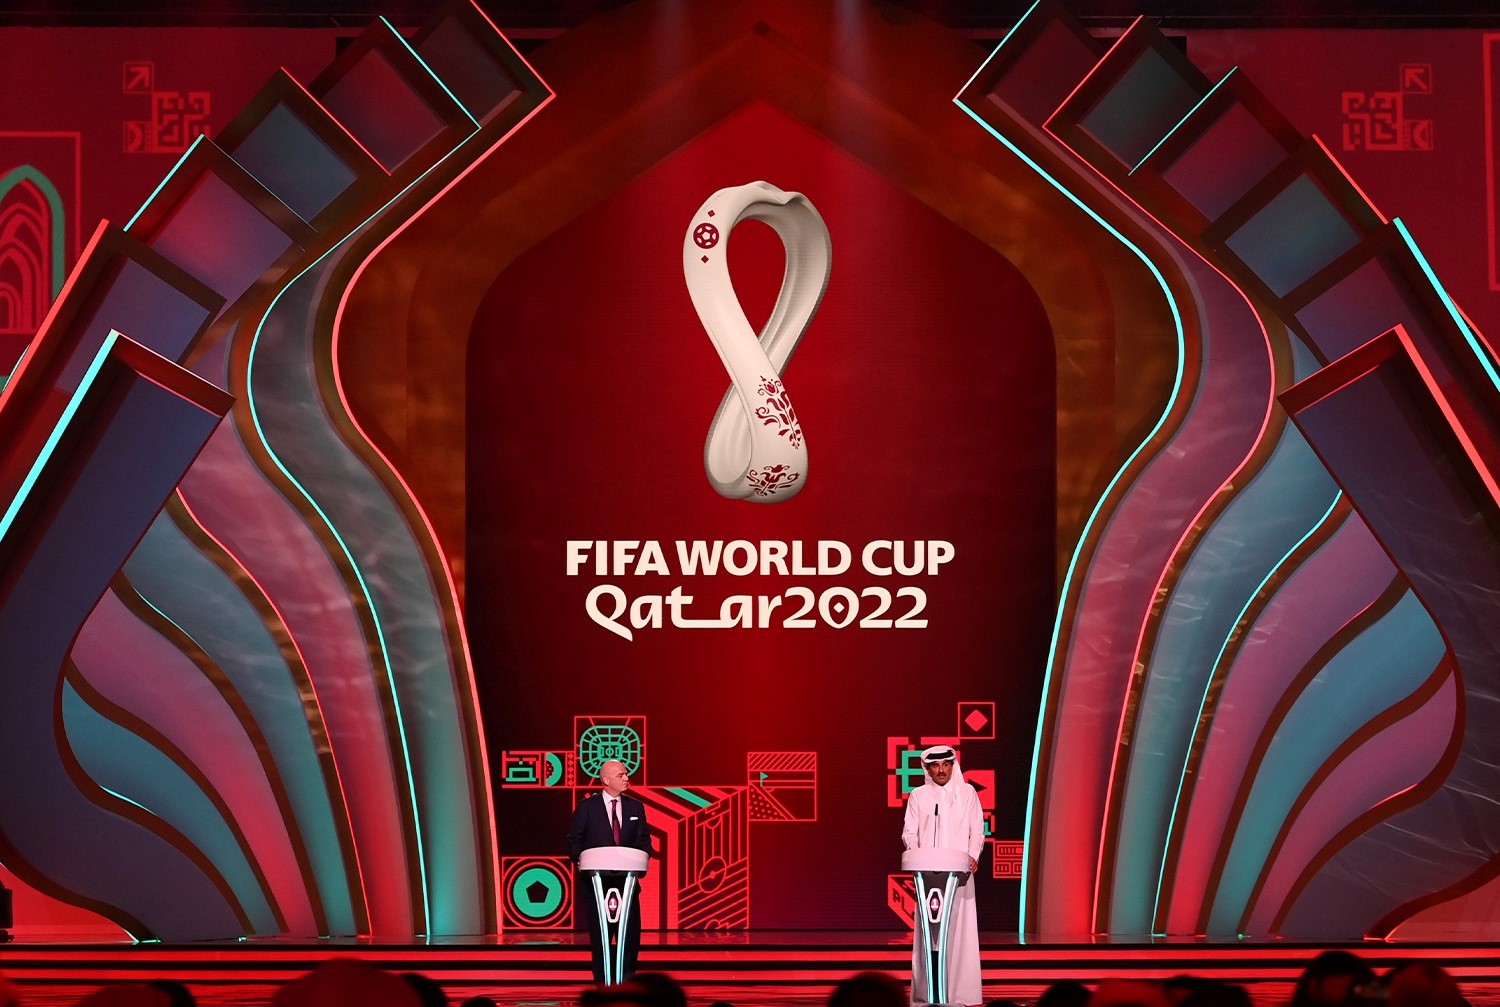 umărul biletelor vândute pentru meciurile Cupei Mondiale de fotbal 2022 a ajuns la 2,45 milioane înainte de ultima fază a vânzărilor/ Foto: Facebook - FIFA World Cup